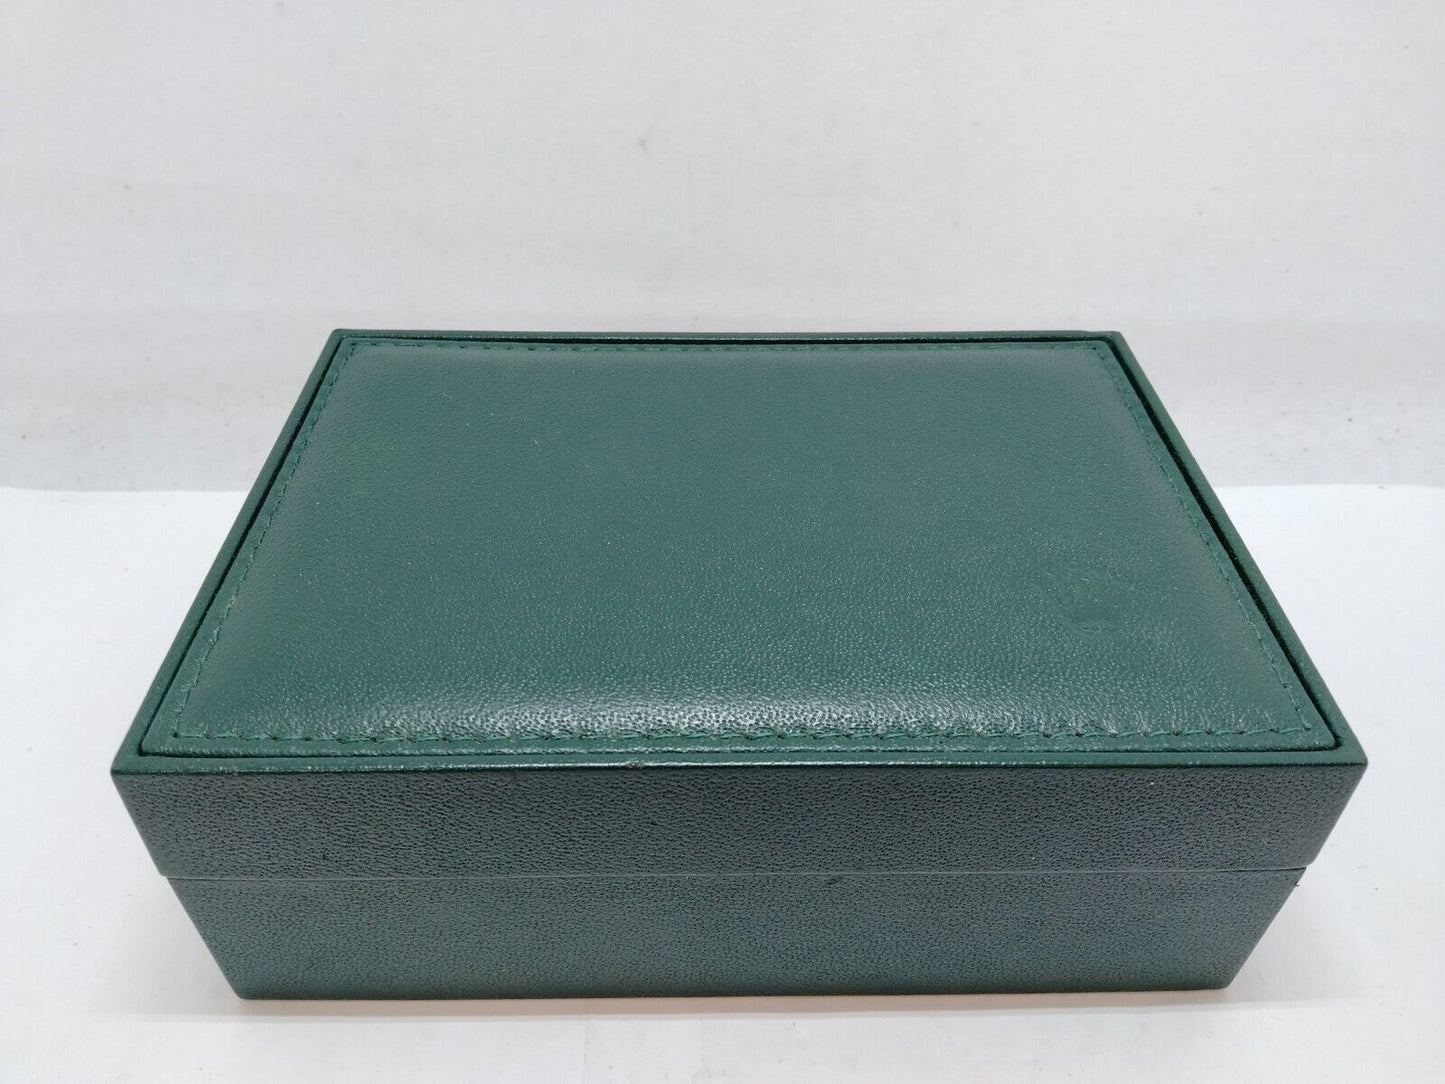 VINTAGE GENUINE ROLEX 16570 Explorer green watch box case 68.00.08 0710004y5S